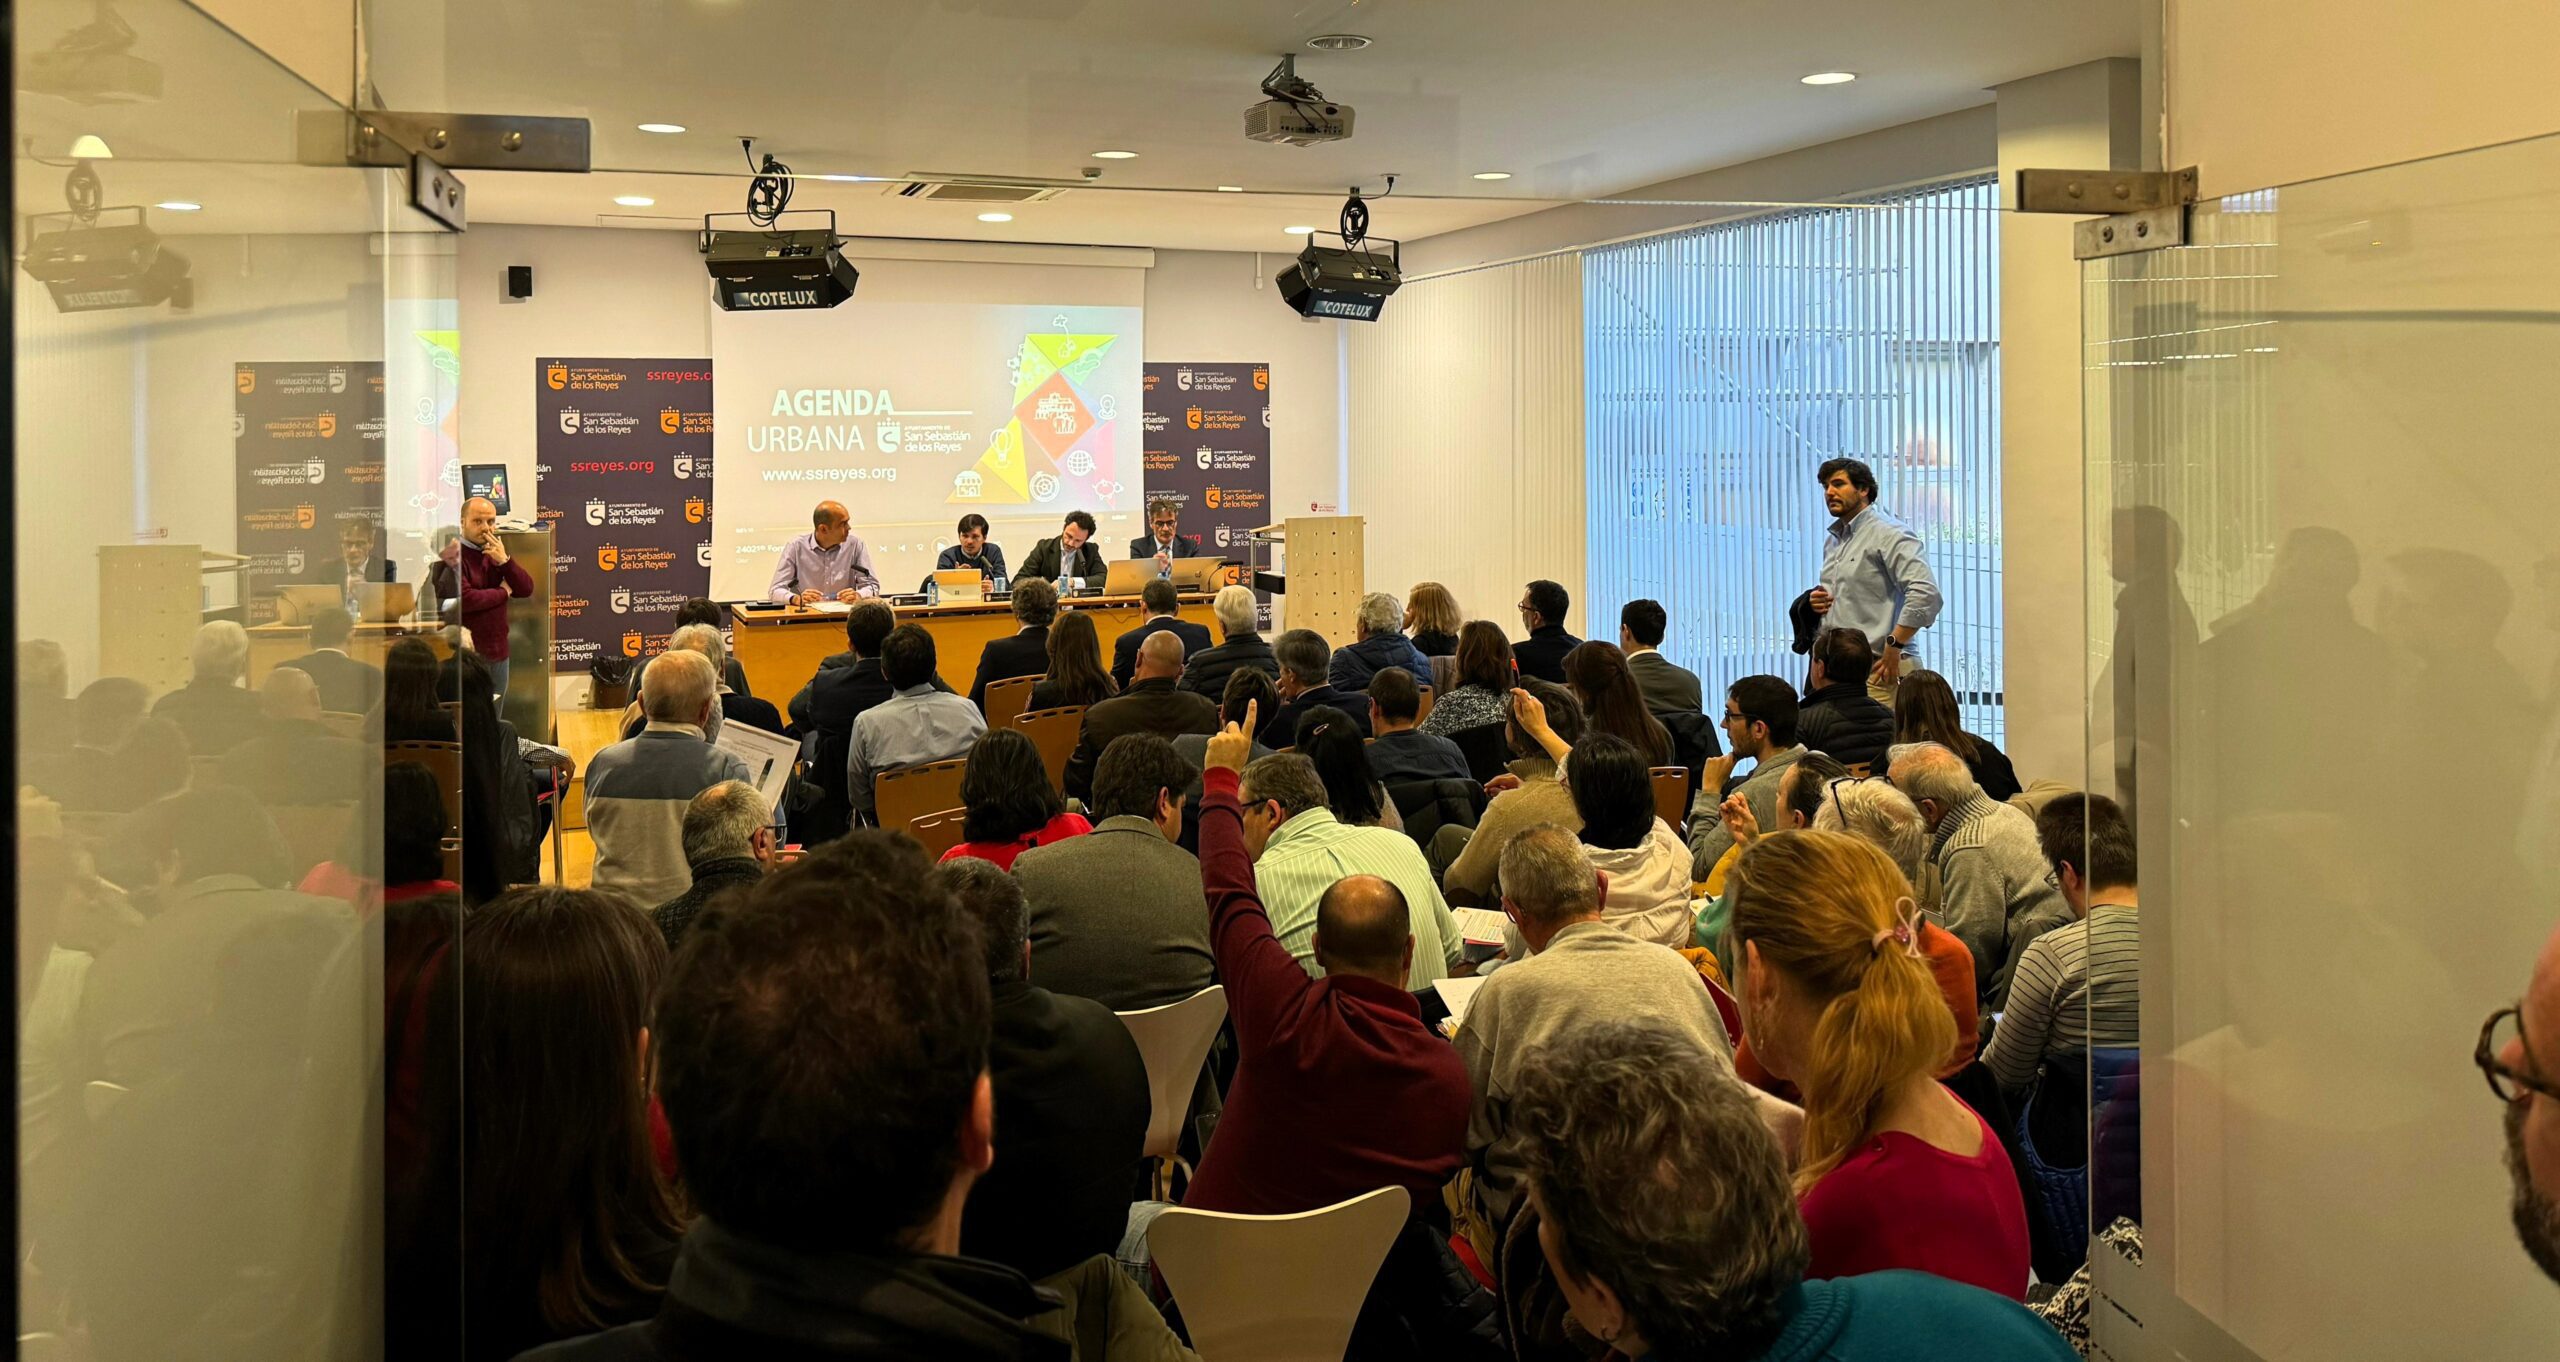 conomía, innovación y gobernanza en la sesión de Agenda Urbana de San Sebastián de los Reyes prevista para hoy